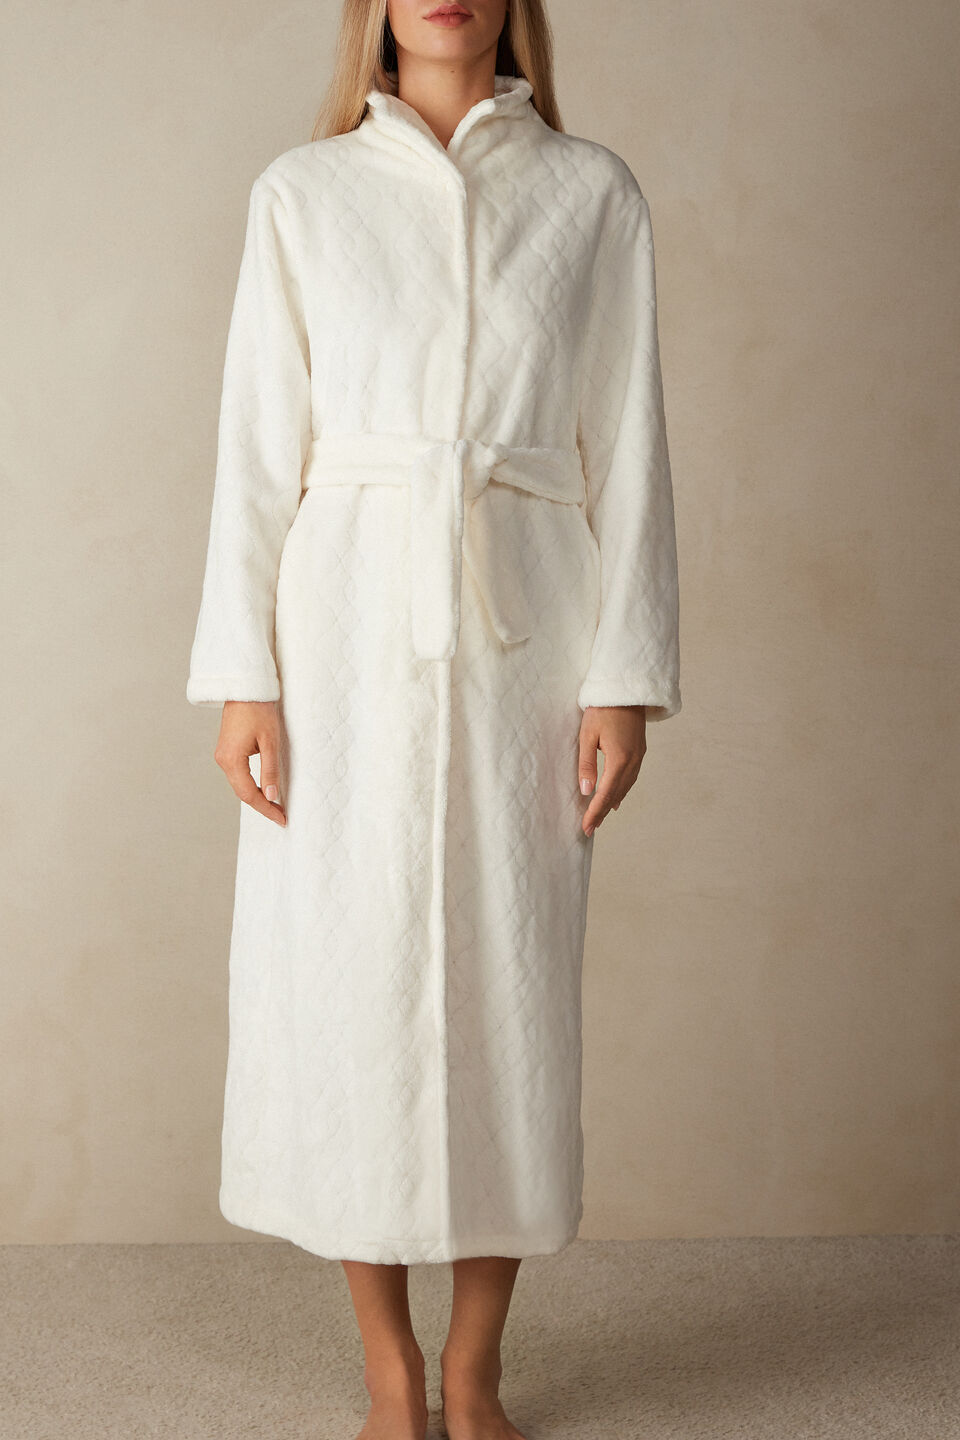 Robe Comprido com Detalhes em Renda Caress White - Dama de Copas